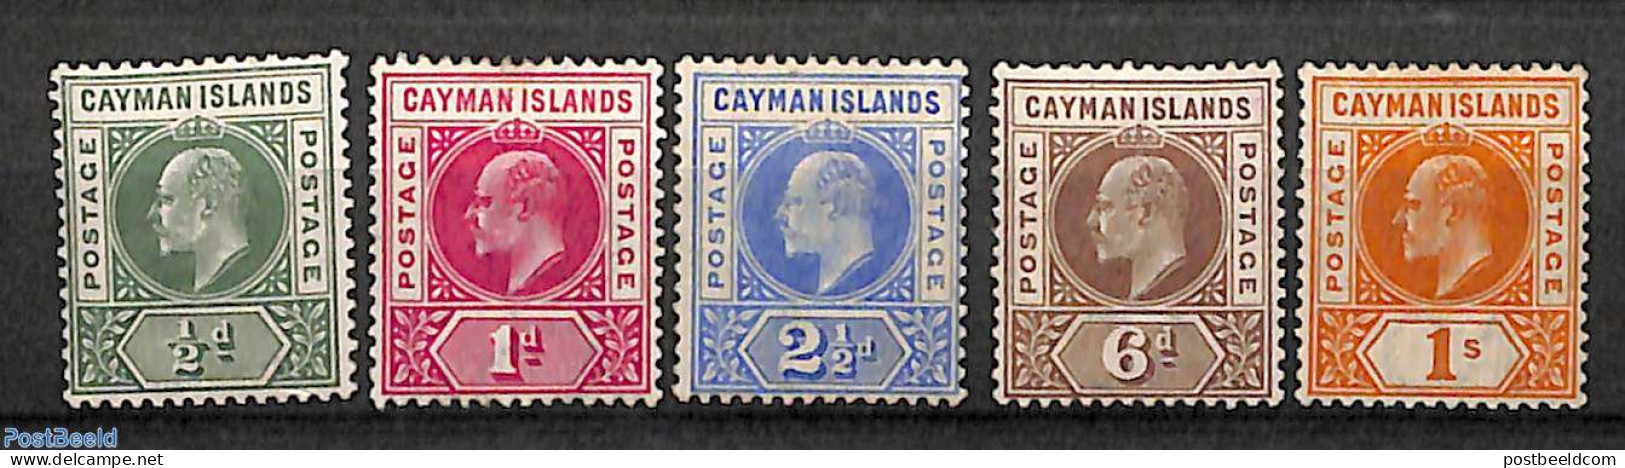 Cayman Islands 1901 Definitives, King Edward VII, WM CA-Crown, 5v, Unused (hinged) - Cayman Islands